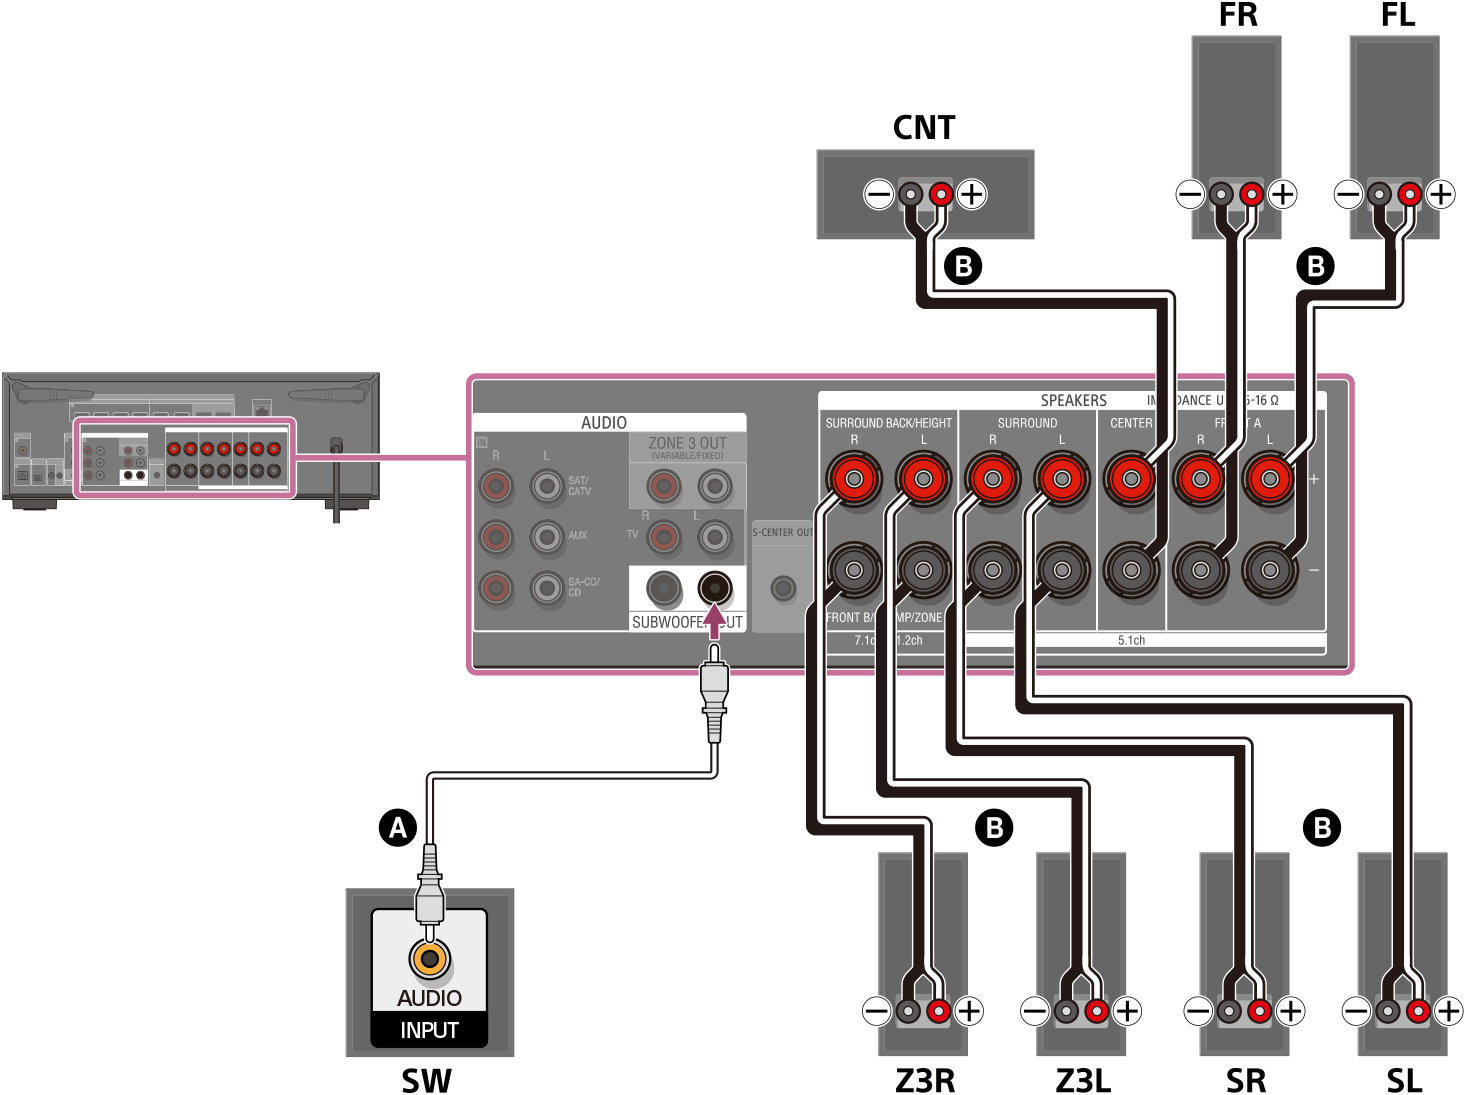 Ilustración de cómo conectar cada altavoz a los terminales de altavoz de la parte trasera de la unidad. Conecte los altavoces delanteros izquierdo y derecho, los altavoces envolventes izquierdo y derecho, los altavoces de la zona 3 izquierdo y derecho, y el altavoz central a sus terminales de altavoz respectivos utilizando cables de altavoz (no incluidos). Conecte el altavoz potenciador de graves al terminal SUBWOOFER OUT con un cable de audio monofónico (no incluido).